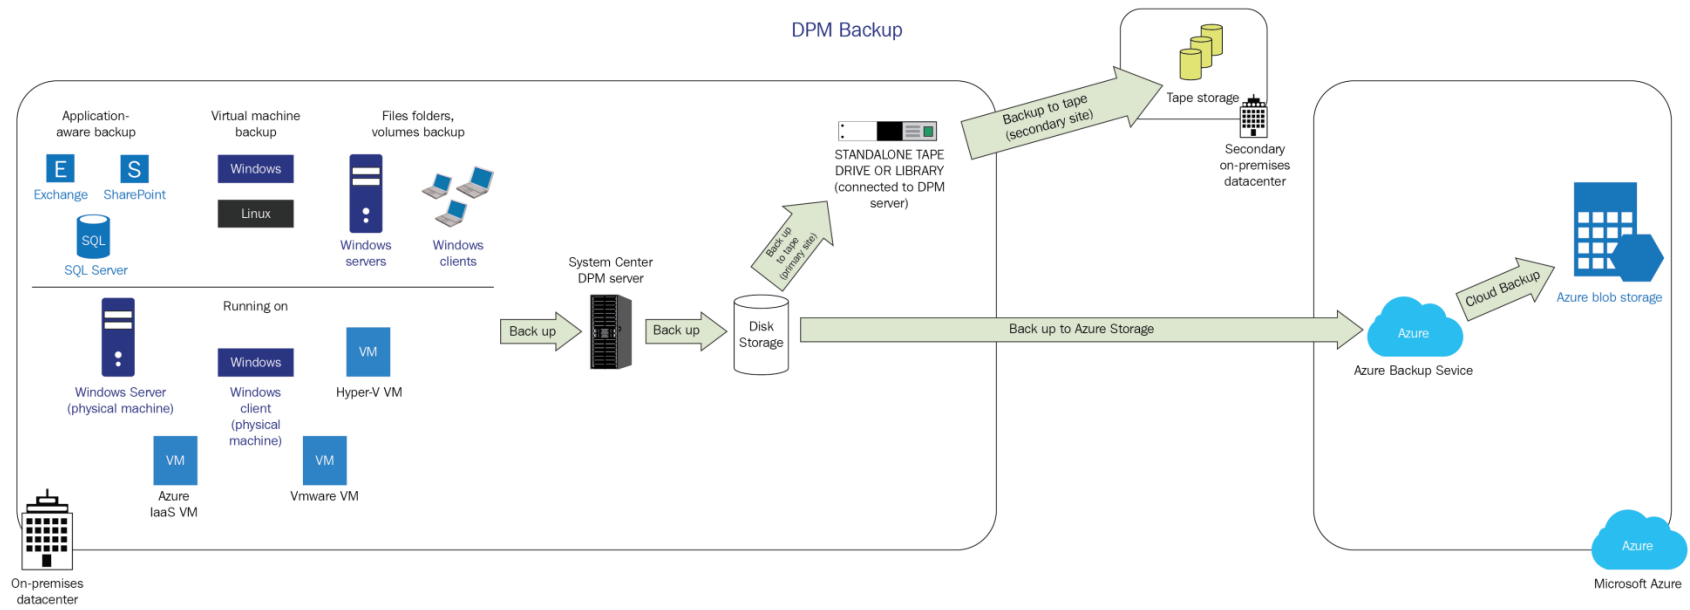 Diagrama do fluxo de trabalho de cópia de segurança do DPM.